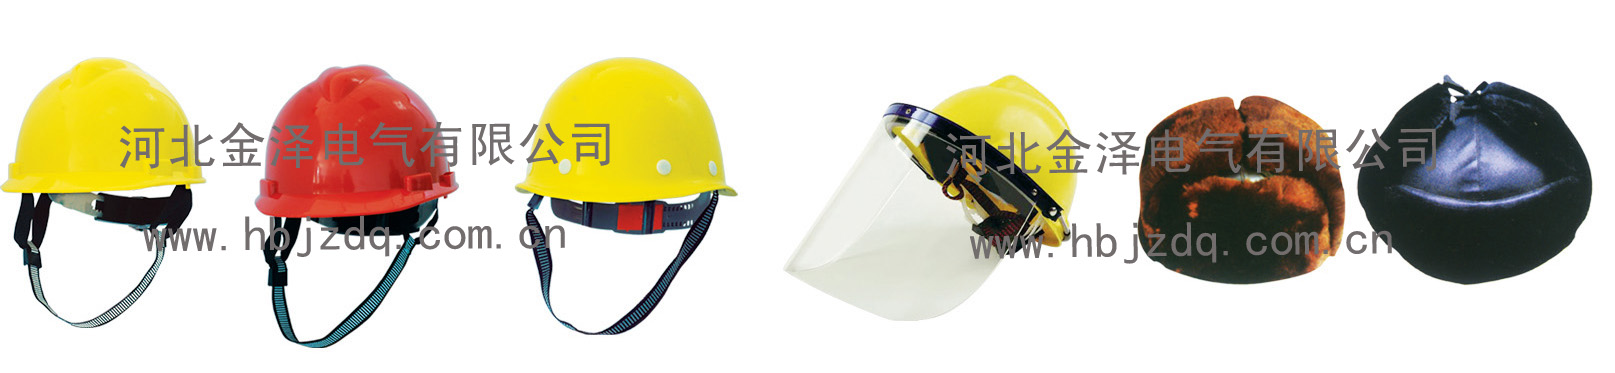 电工安全帽，玻璃钢盔式安全帽，绝缘安全帽，ABS安全帽，环氧树脂安全帽